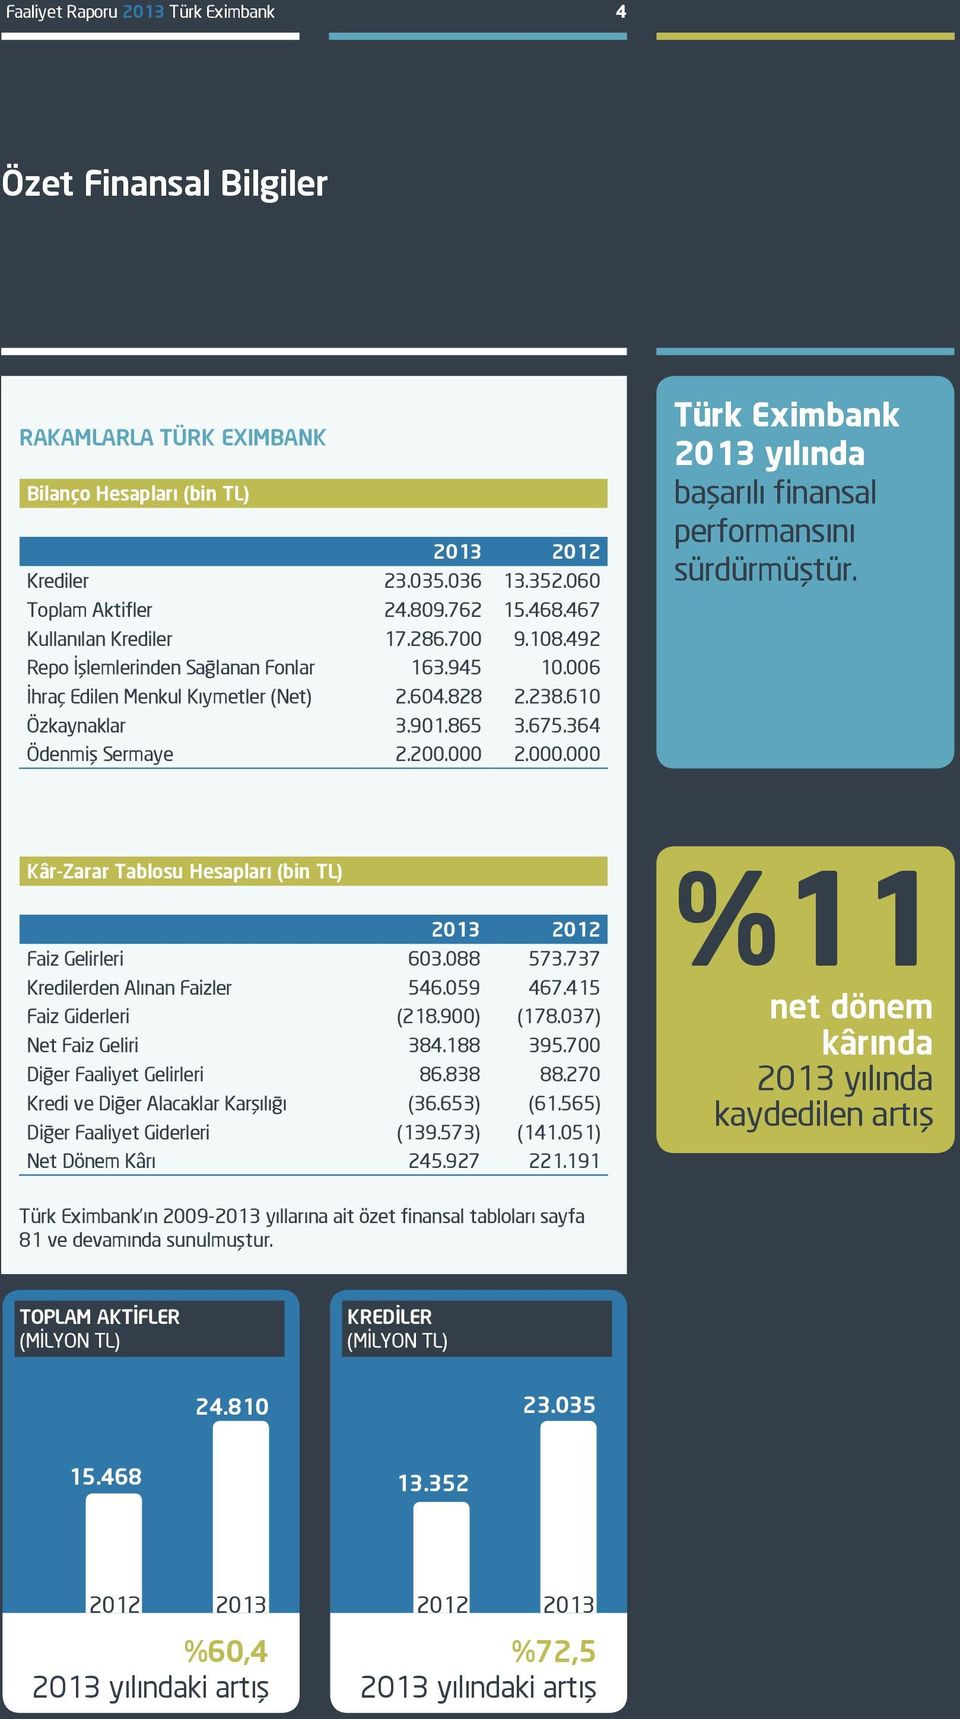 364 Ödenmiş Sermaye 2.200.000 2.000.000 Türk Eximbank 2013 yılında başarılı finansal performansını sürdürmüştür. Kâr-Zarar Tablosu Hesapları (bin TL) 2013 2012 Faiz Gelirleri 603.088 573.